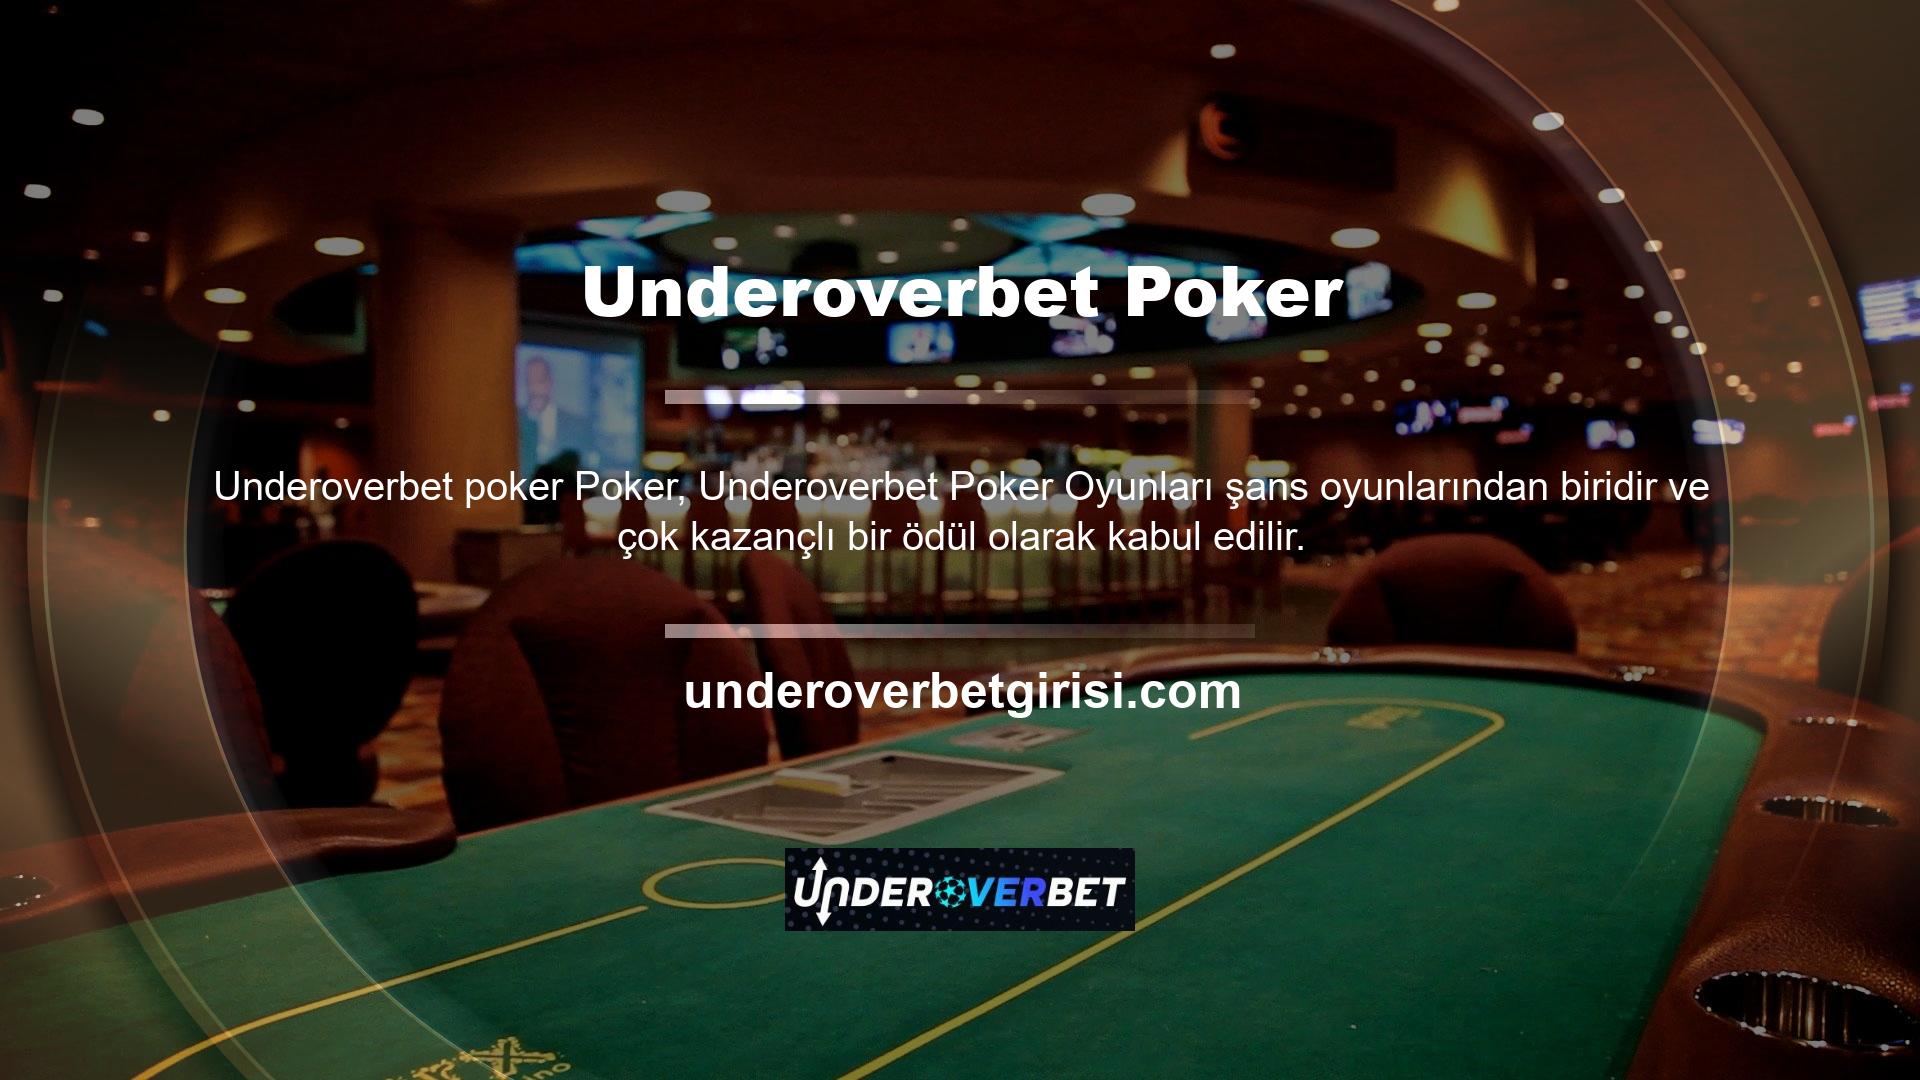 Bu konuda bahisçiler, Underoverbet Games bahis sitesi üzerinden poker oyunlarına erişim sağlamakta ve makul meblağlarda para kazanmaya çalışmaktadır